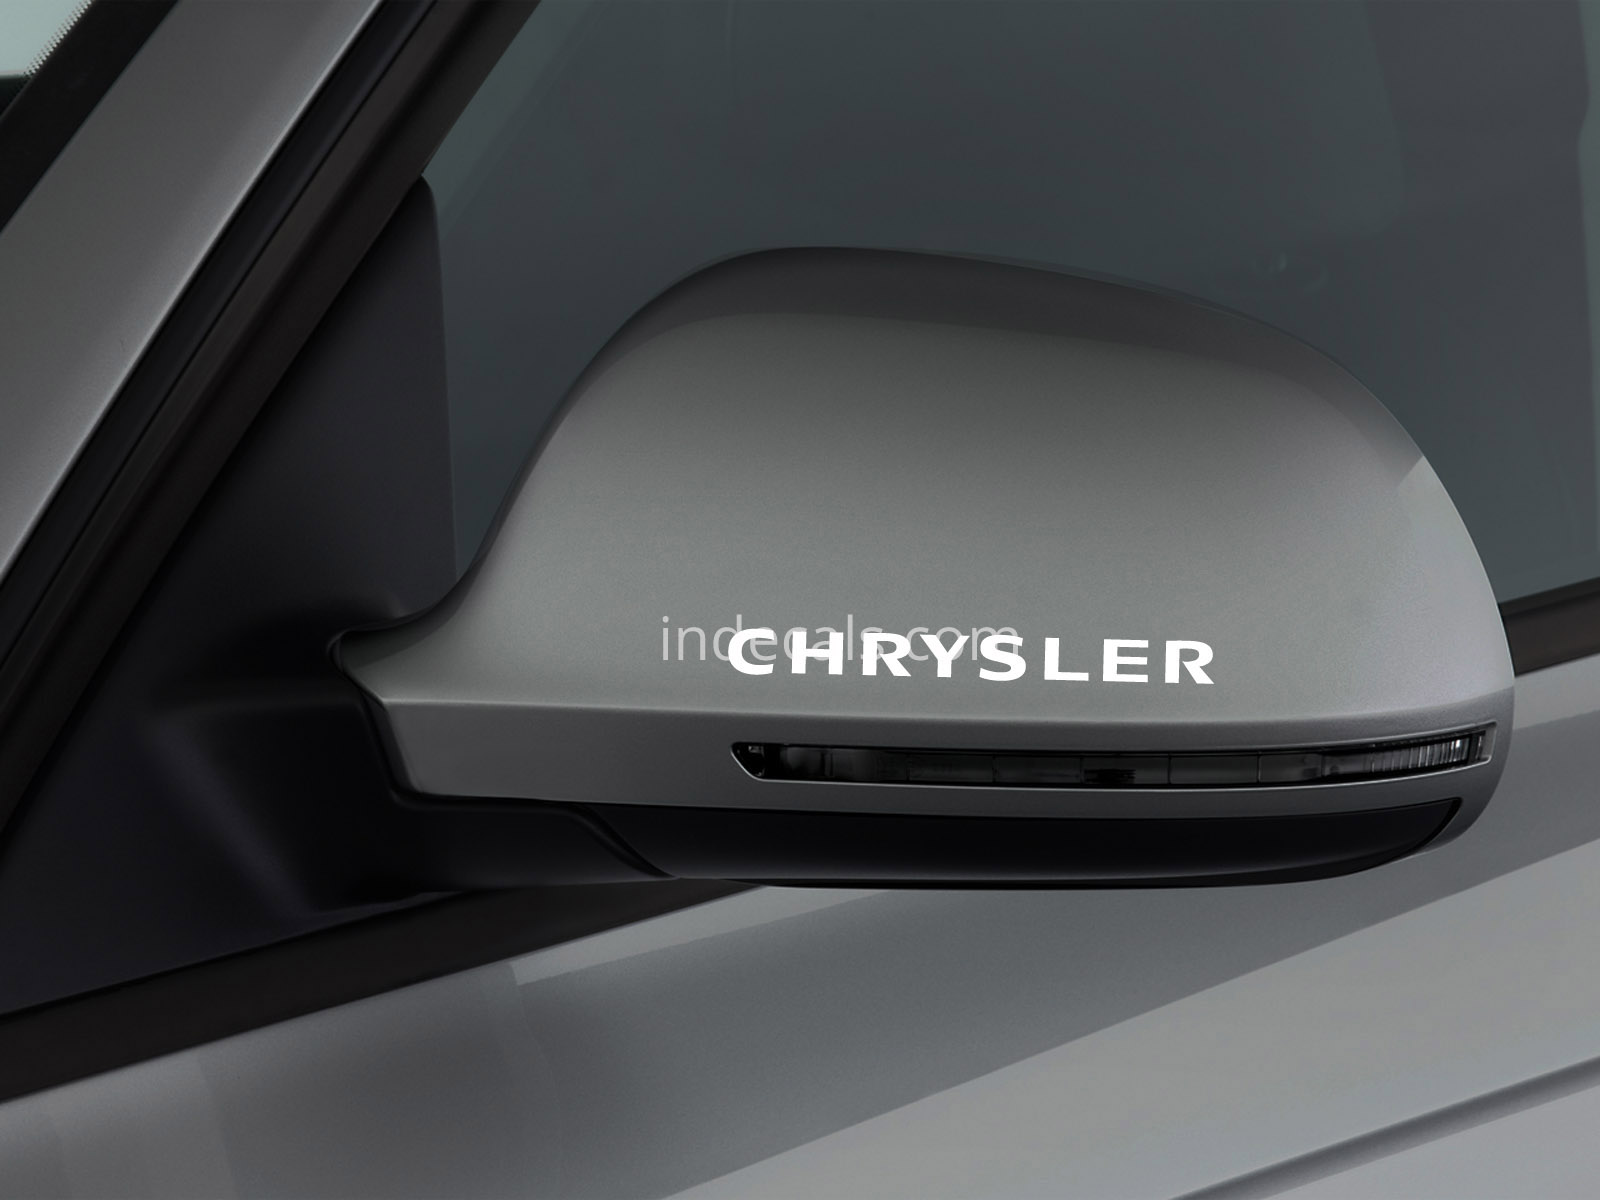 3 x Chrysler Stickers for Mirror - White